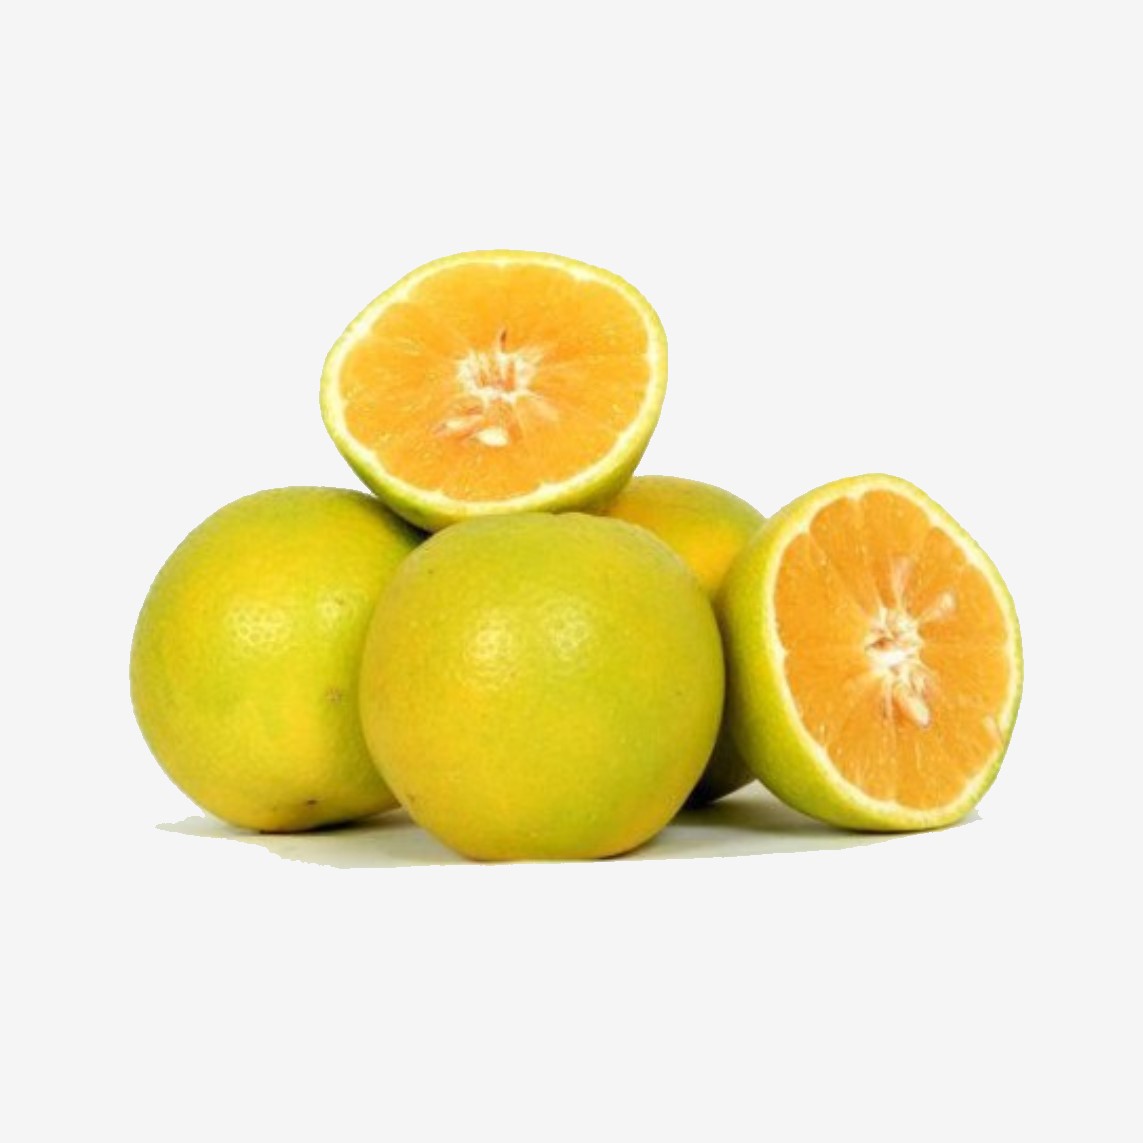 ارزش غذایی  لیمو شیرین